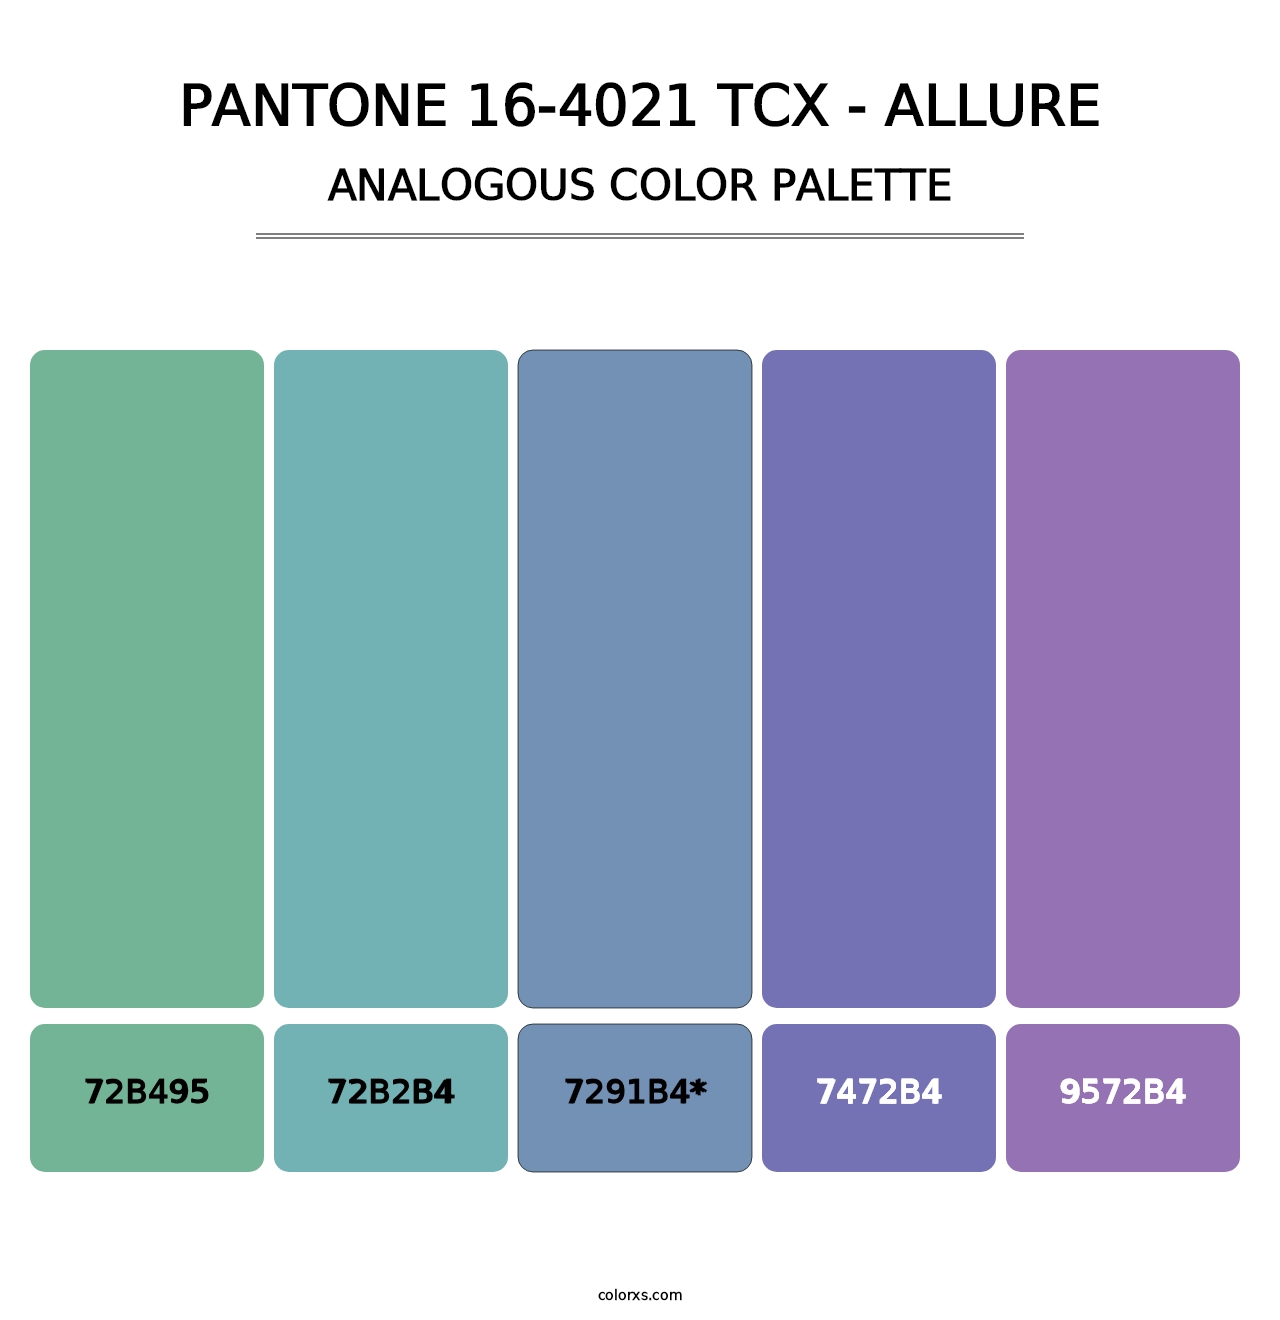 PANTONE 16-4021 TCX - Allure - Analogous Color Palette